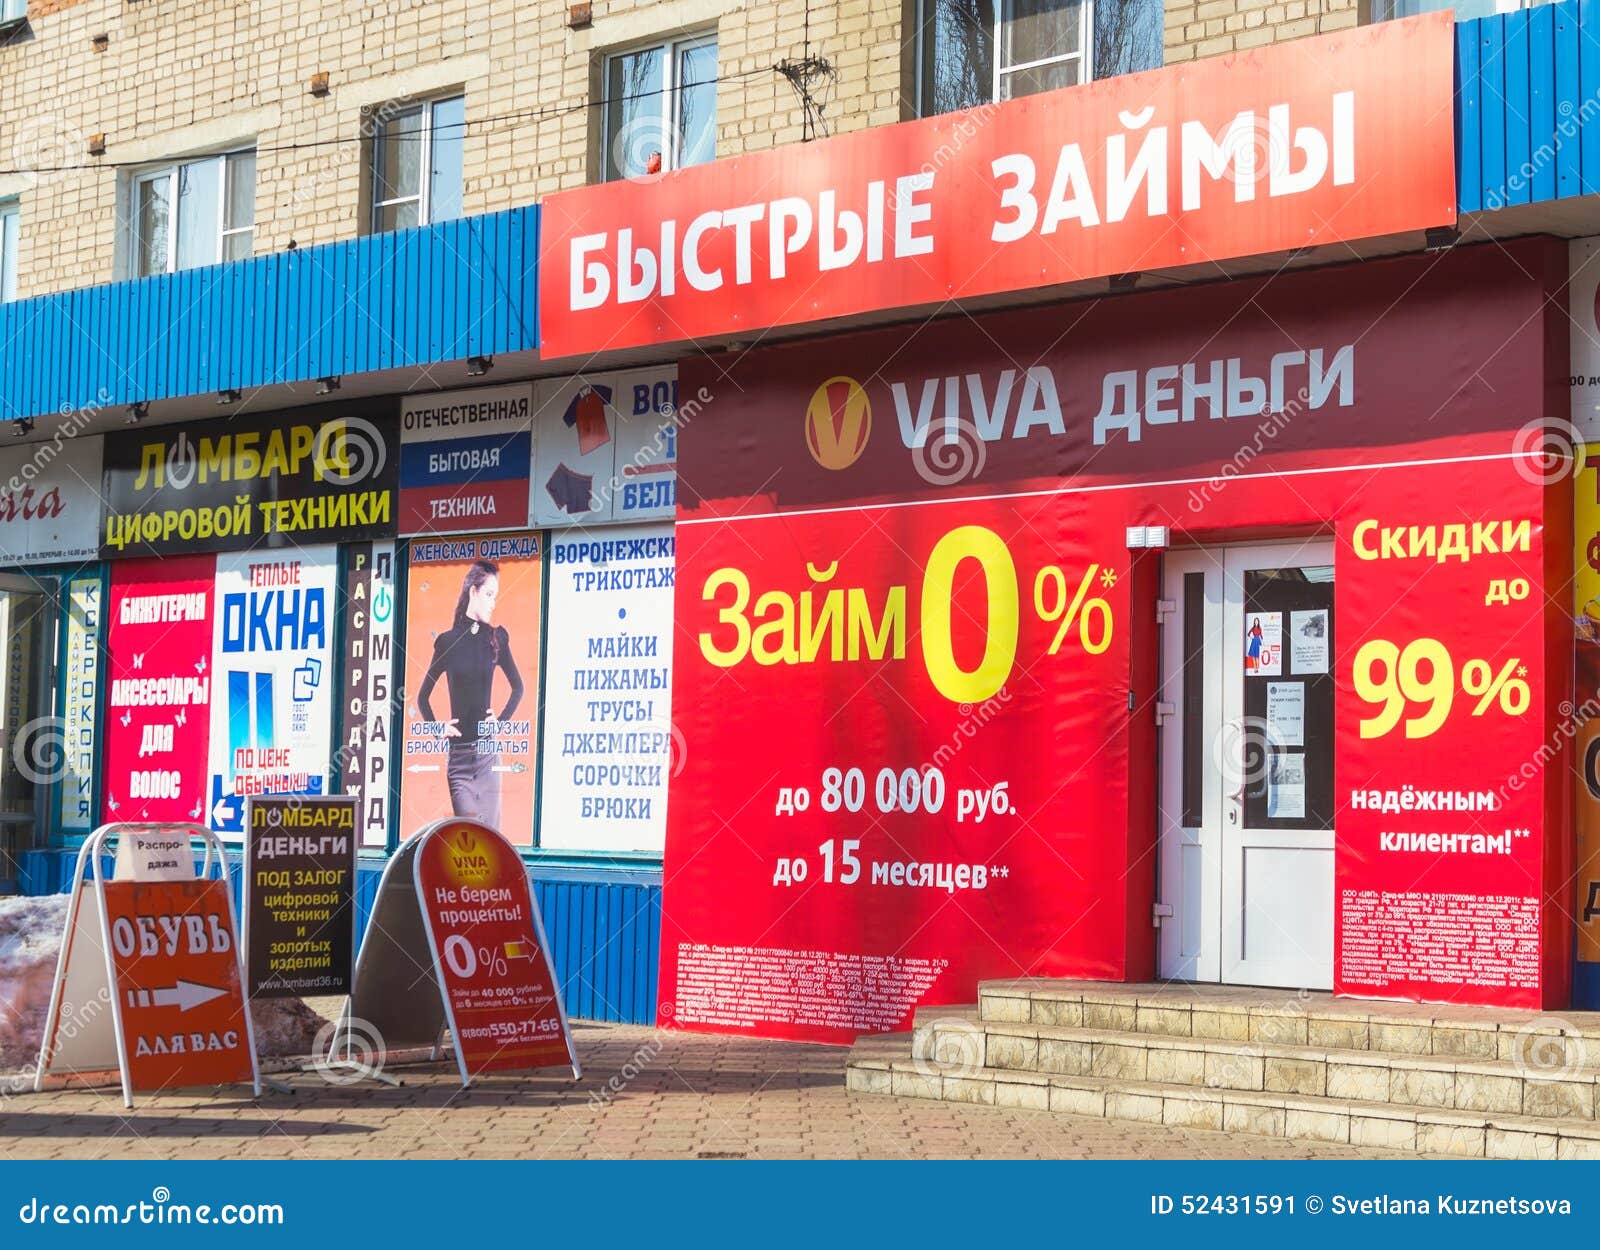 Срочные займы микрозайм наличными в Новомосковске